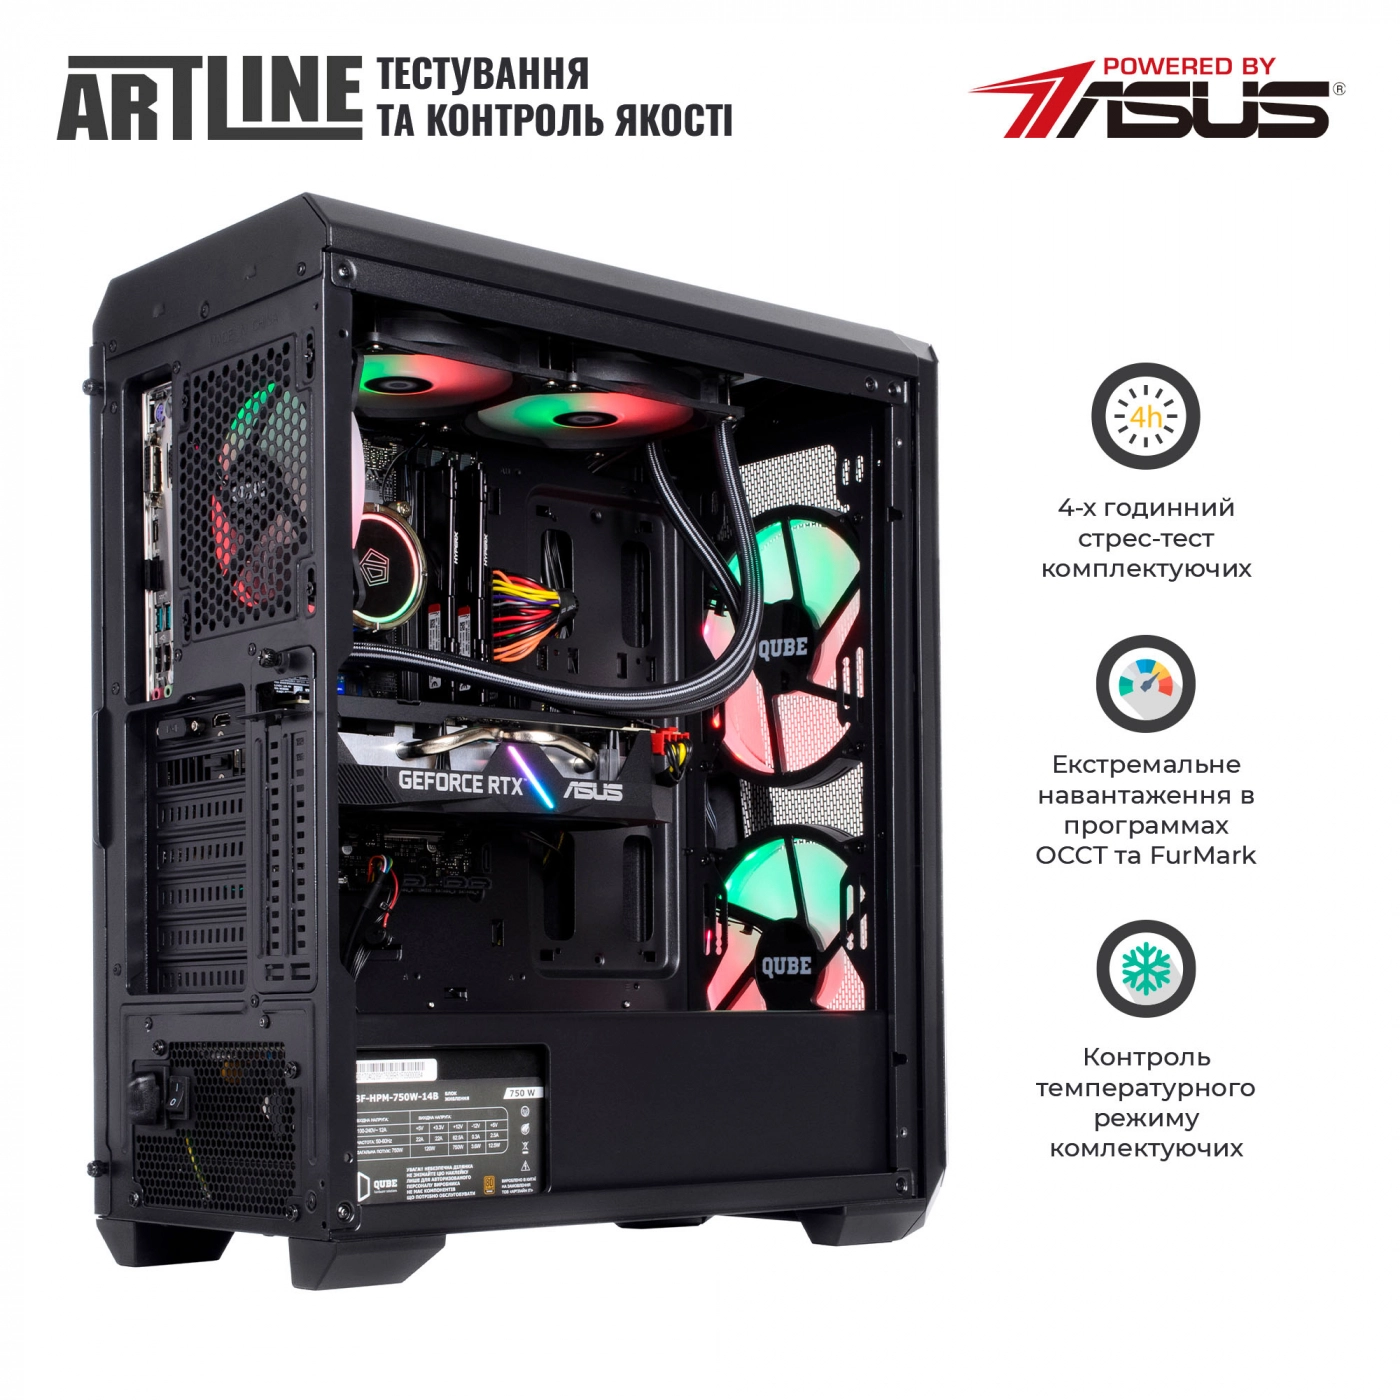 Купить Компьютер ARTLINE Gaming X75v25 - фото 8